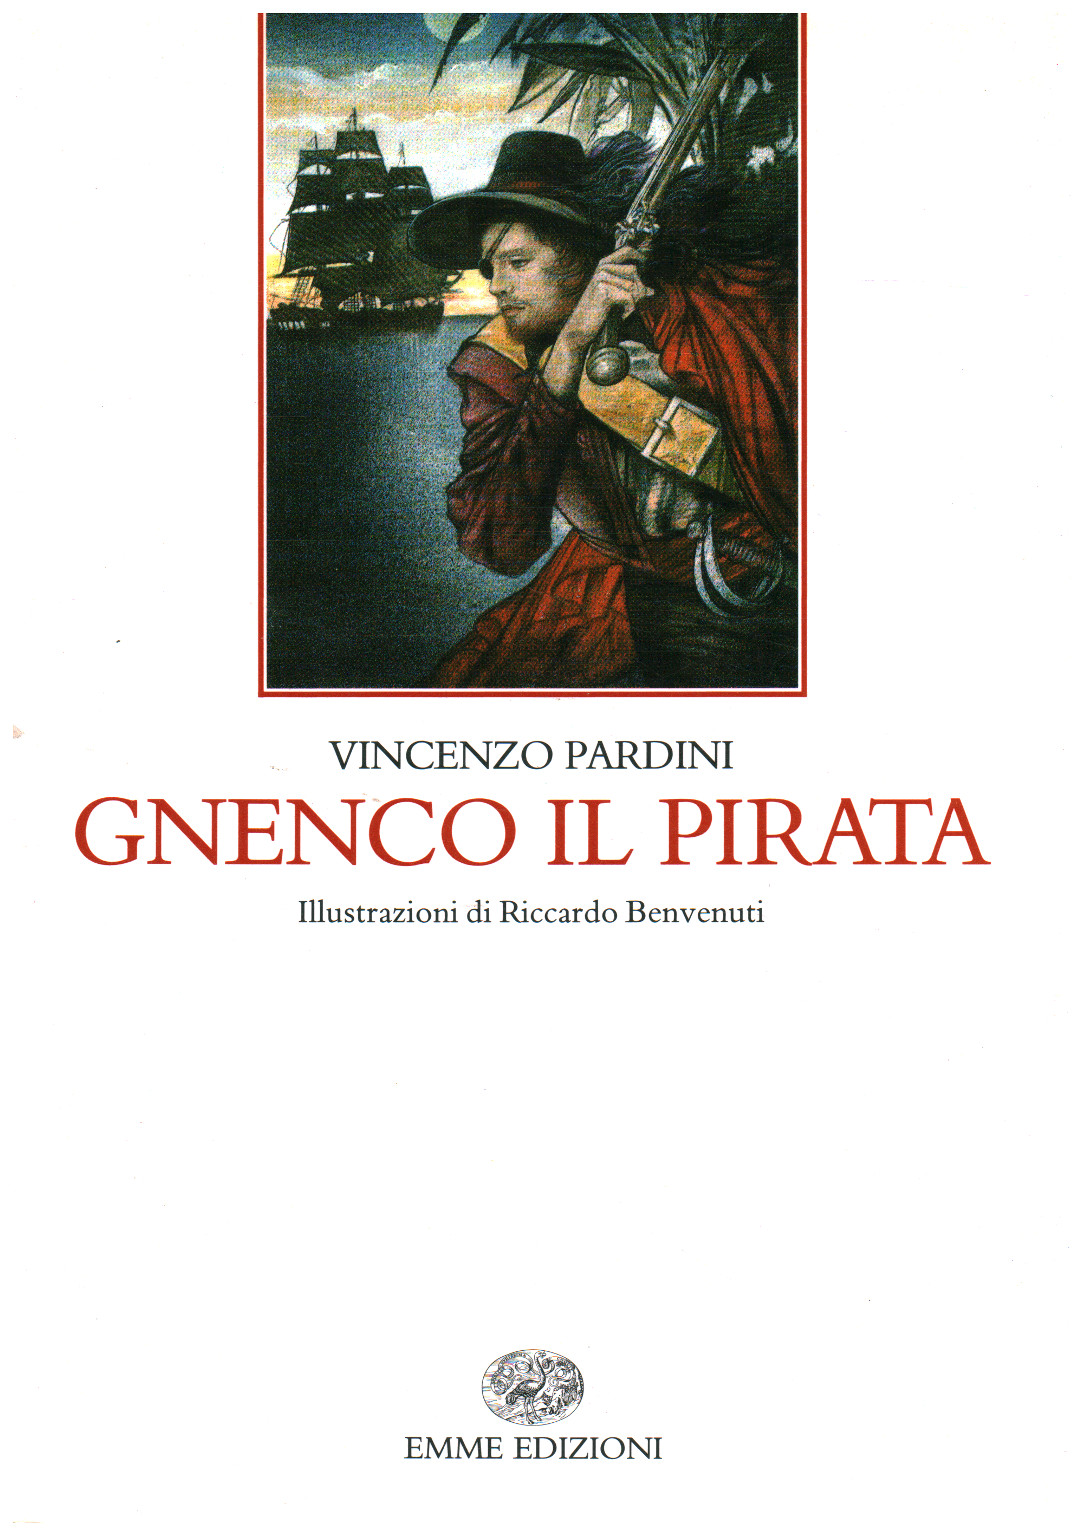 Gnenco the pirate, Vincenzo Pardini